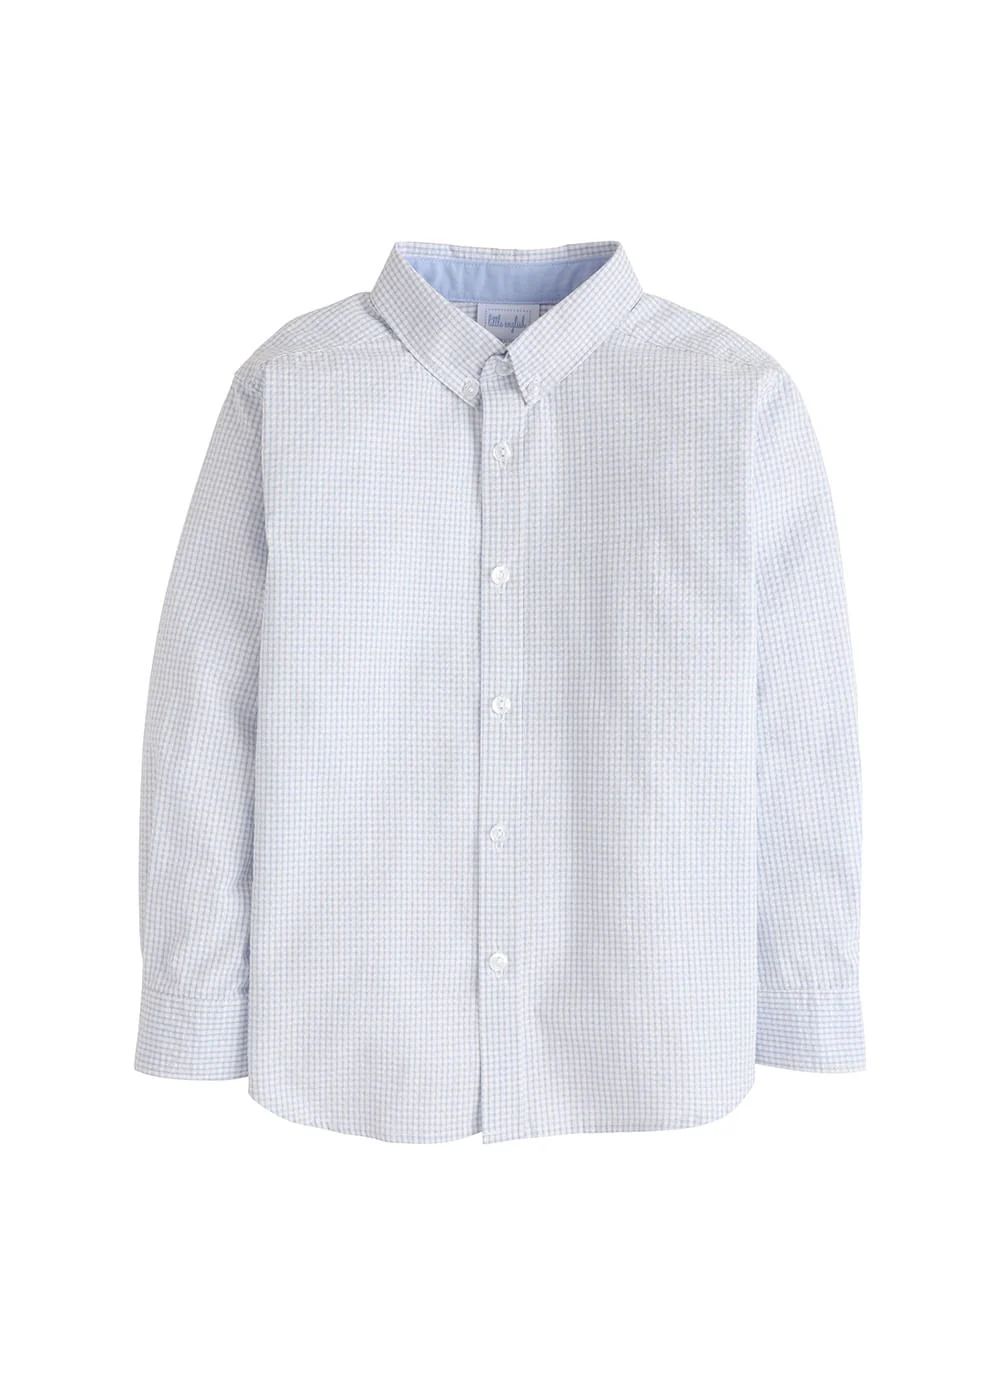 Button Down Shirt - Light Blue Seersucker Gingham | Little English